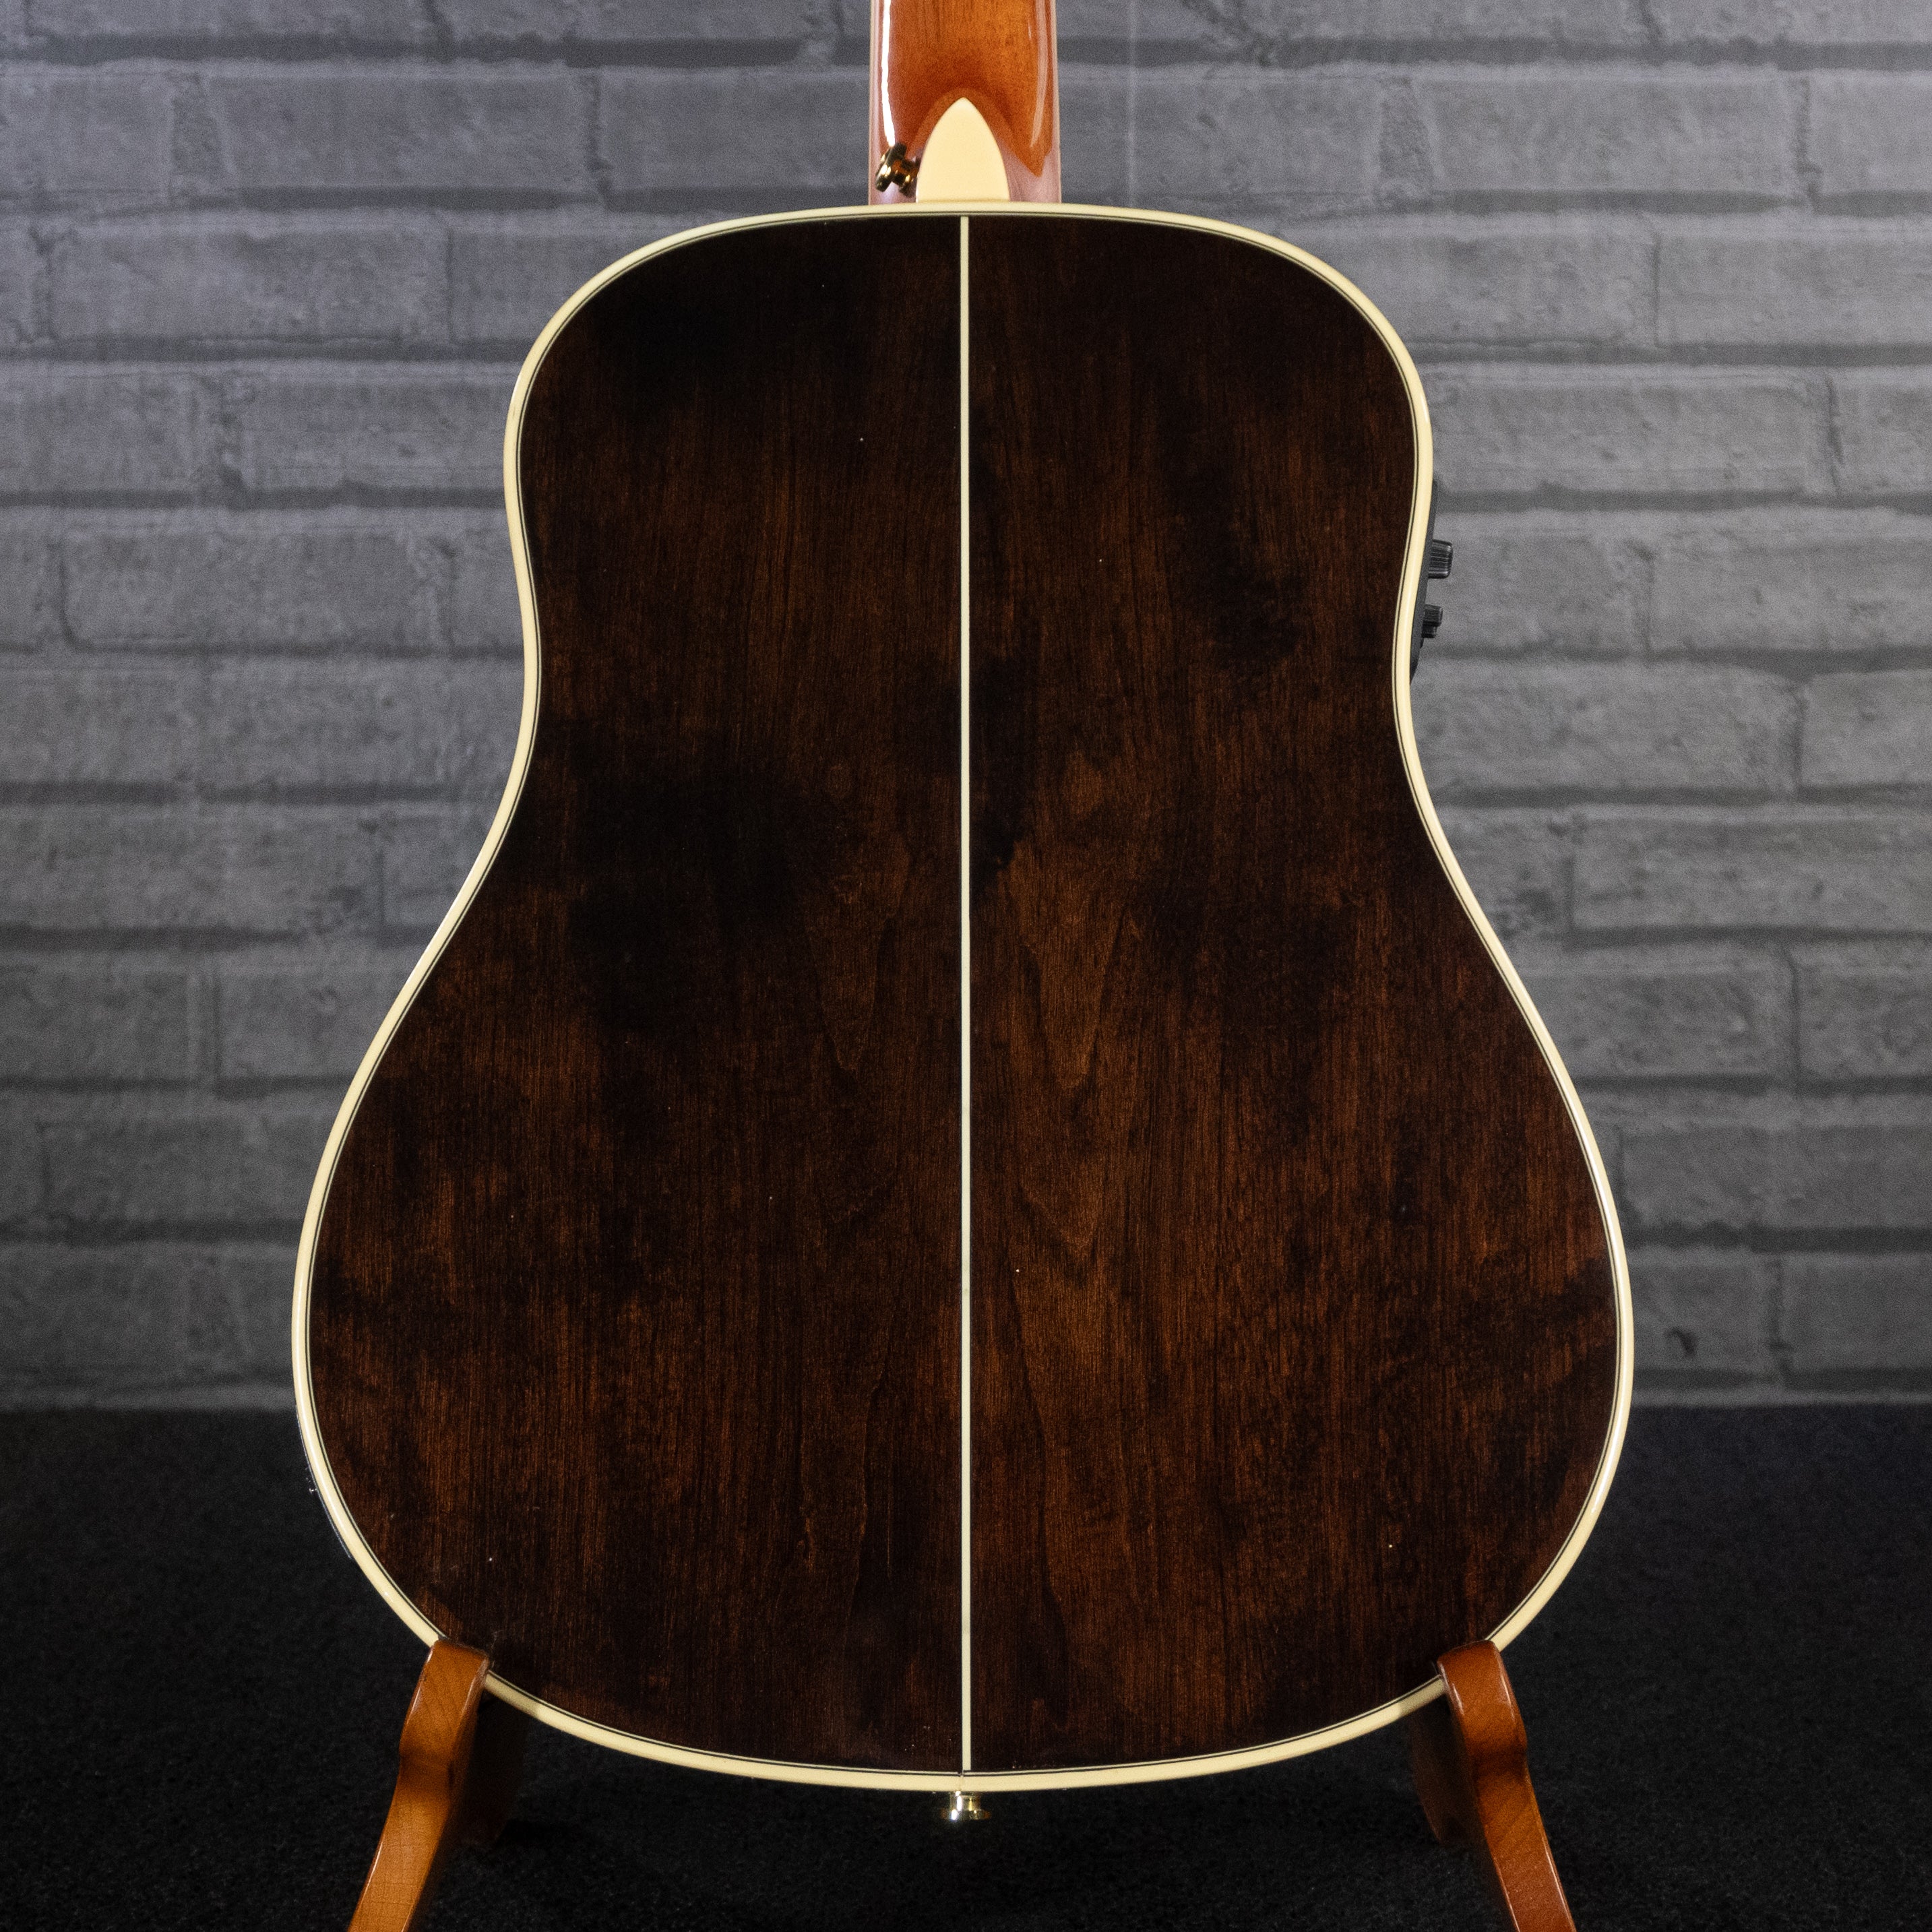 Tagima Canada Series Fernie EQ Small Body Acoustic Guitar (Cherryburst)